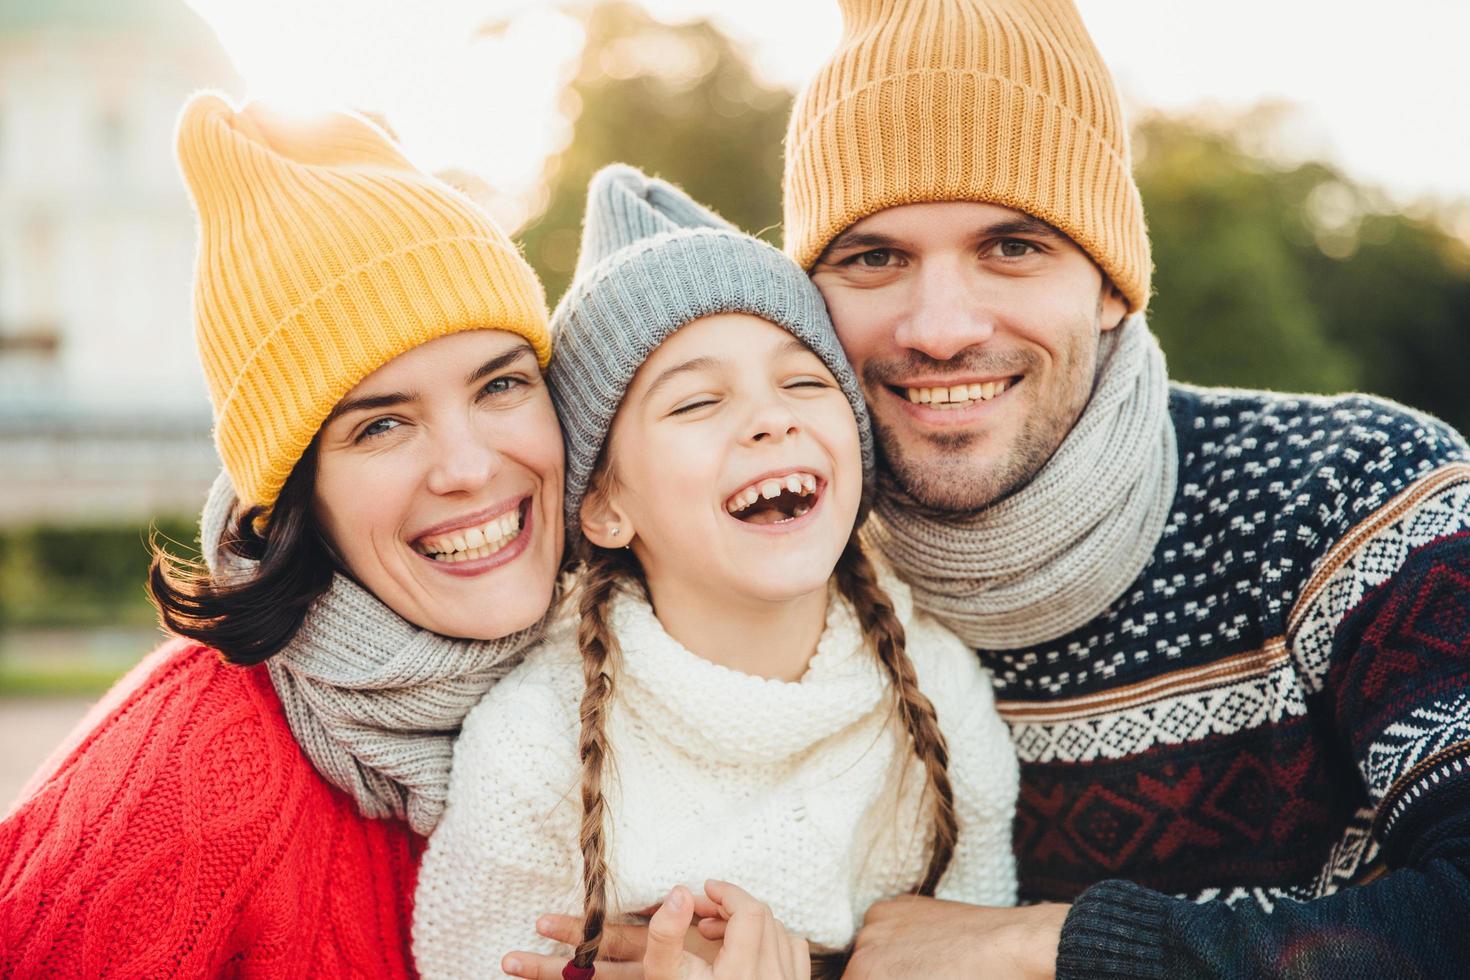 horizontaal portret van lachende gelukkige vrouw en man hebben plezier met hun dochter, dragen gebreide mutsen, warme truien en sjaals, gaan in het park om samen te wandelen. tijd doorbrengen in familiekring foto